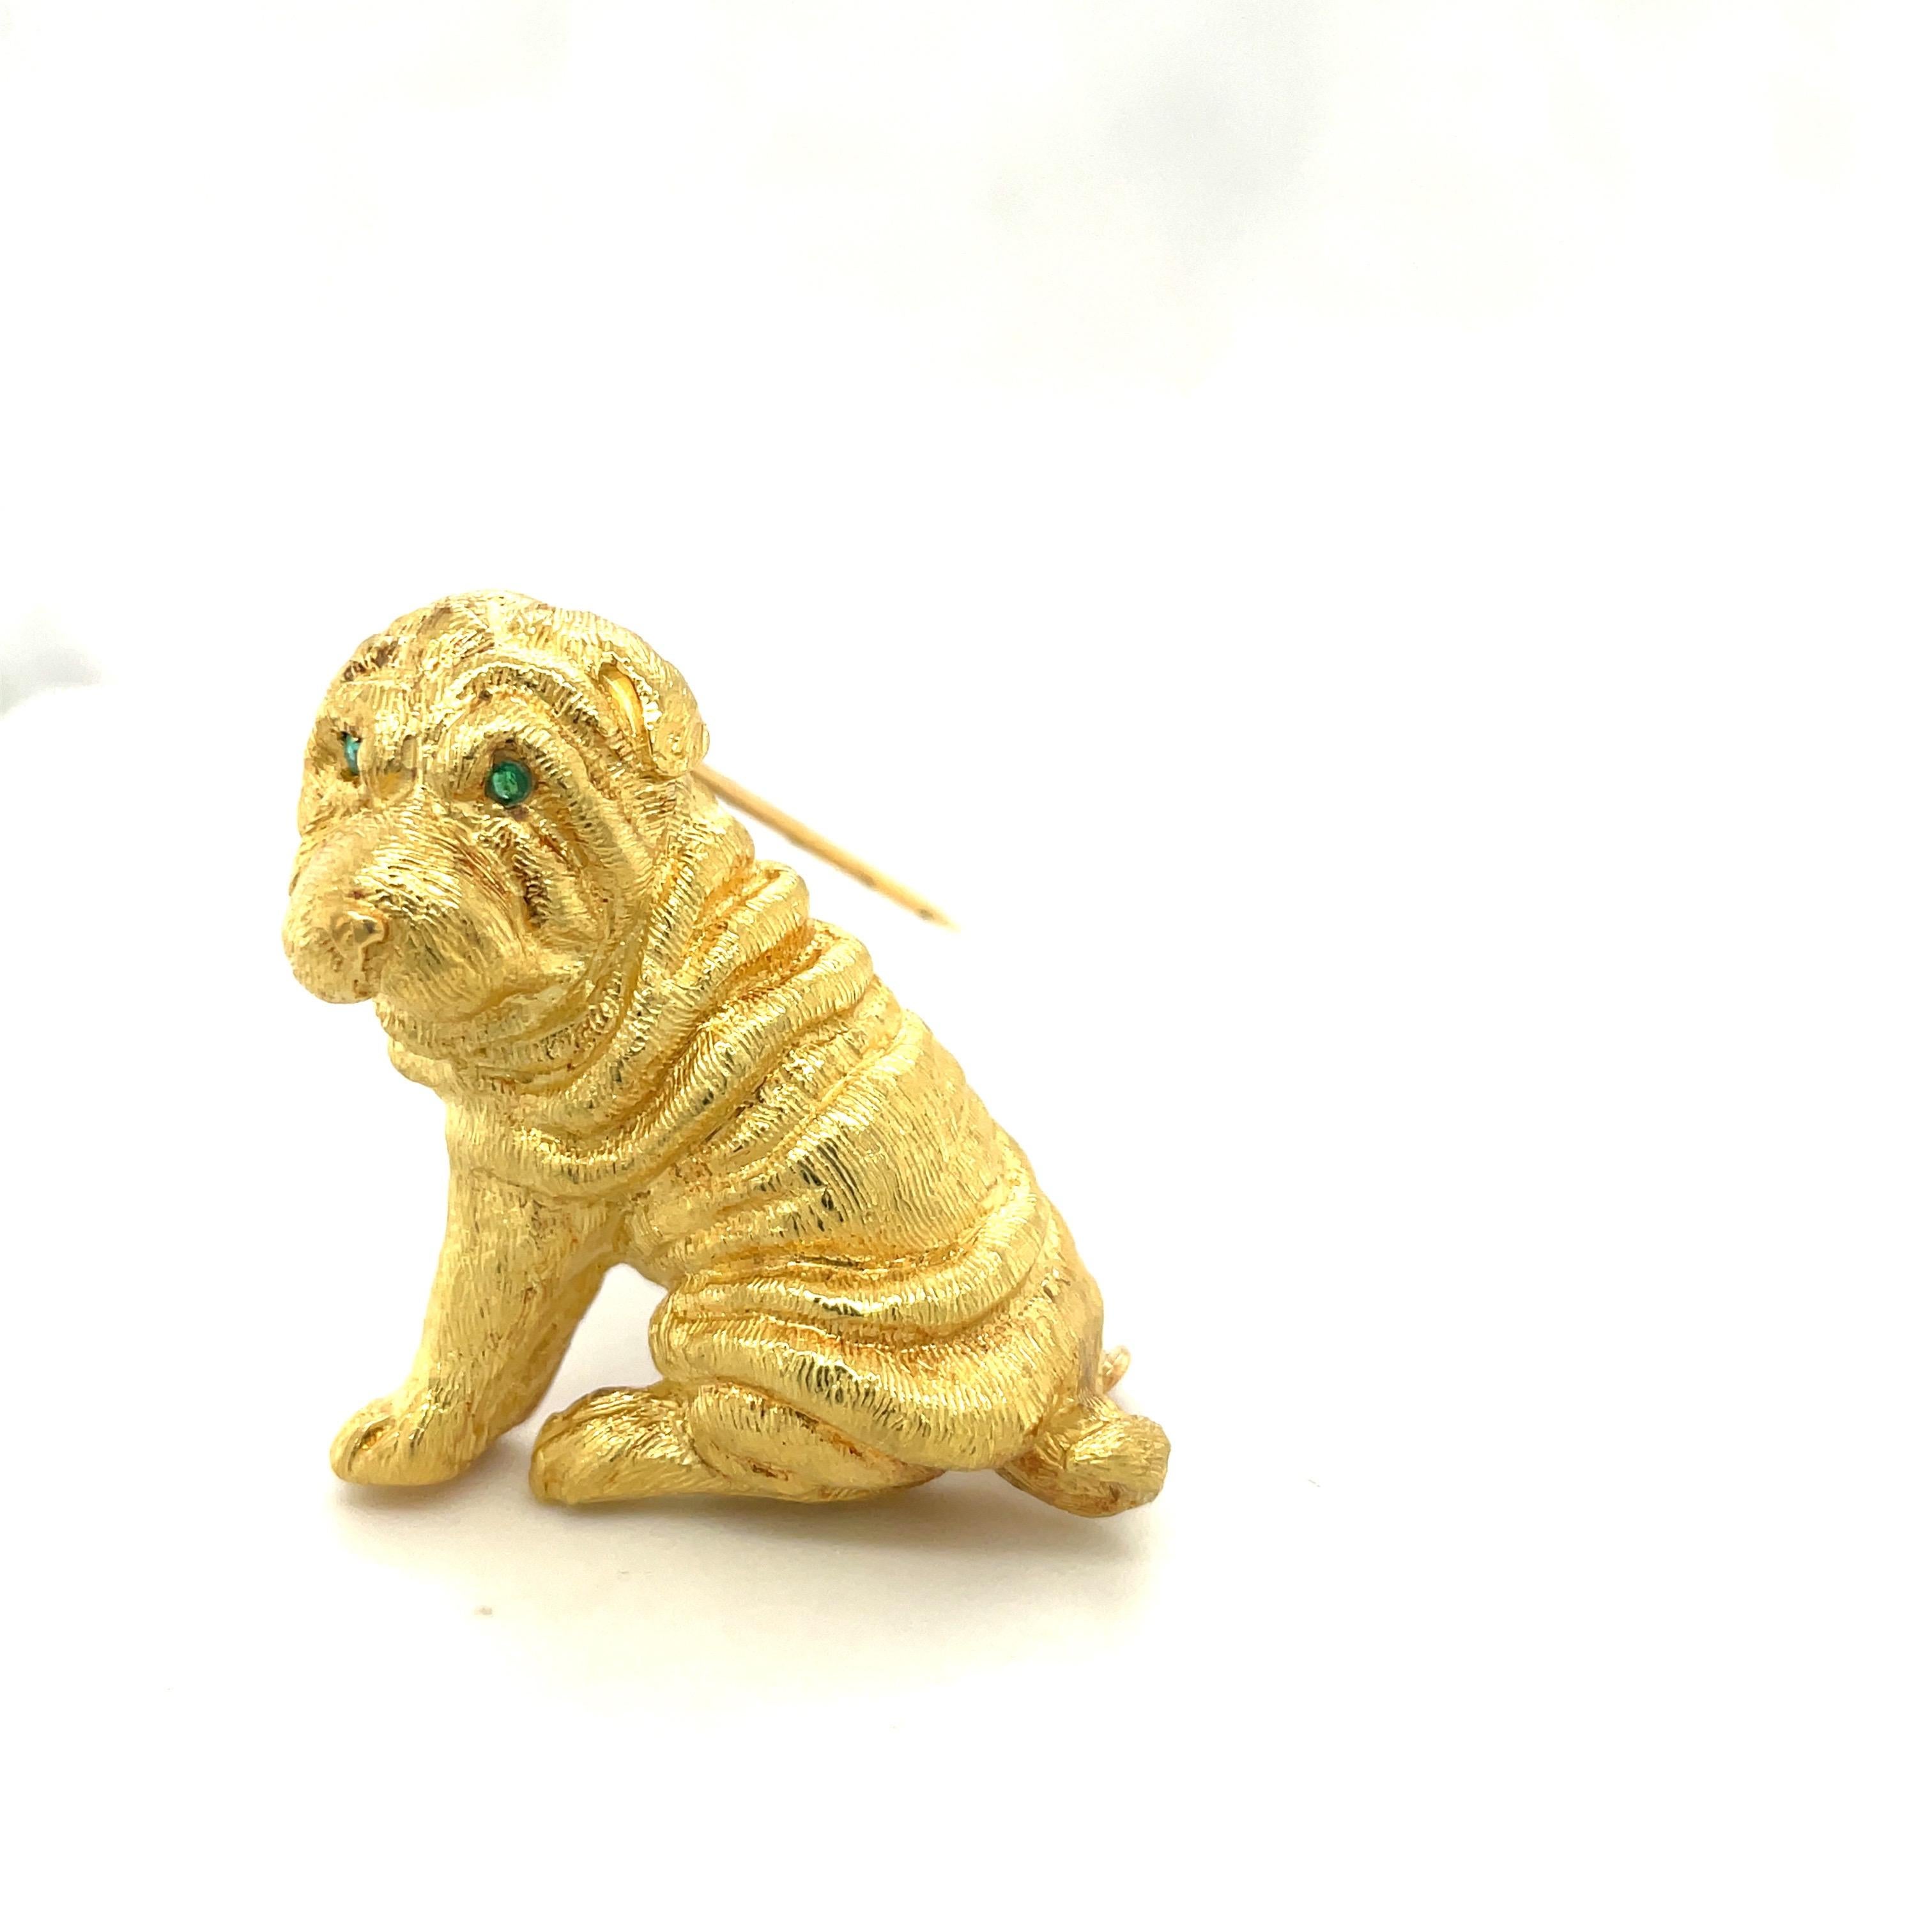 Réalisé par Roger Guillochon ,de France pour Cellini Jewelers, cet or jaune 18 carats.  La broche Shar Pei témoigne d'un magnifique savoir-faire. Le corps du chien est gravé dans une finition satinée. Ses yeux pleins d'âme sont sertis d'émeraudes.